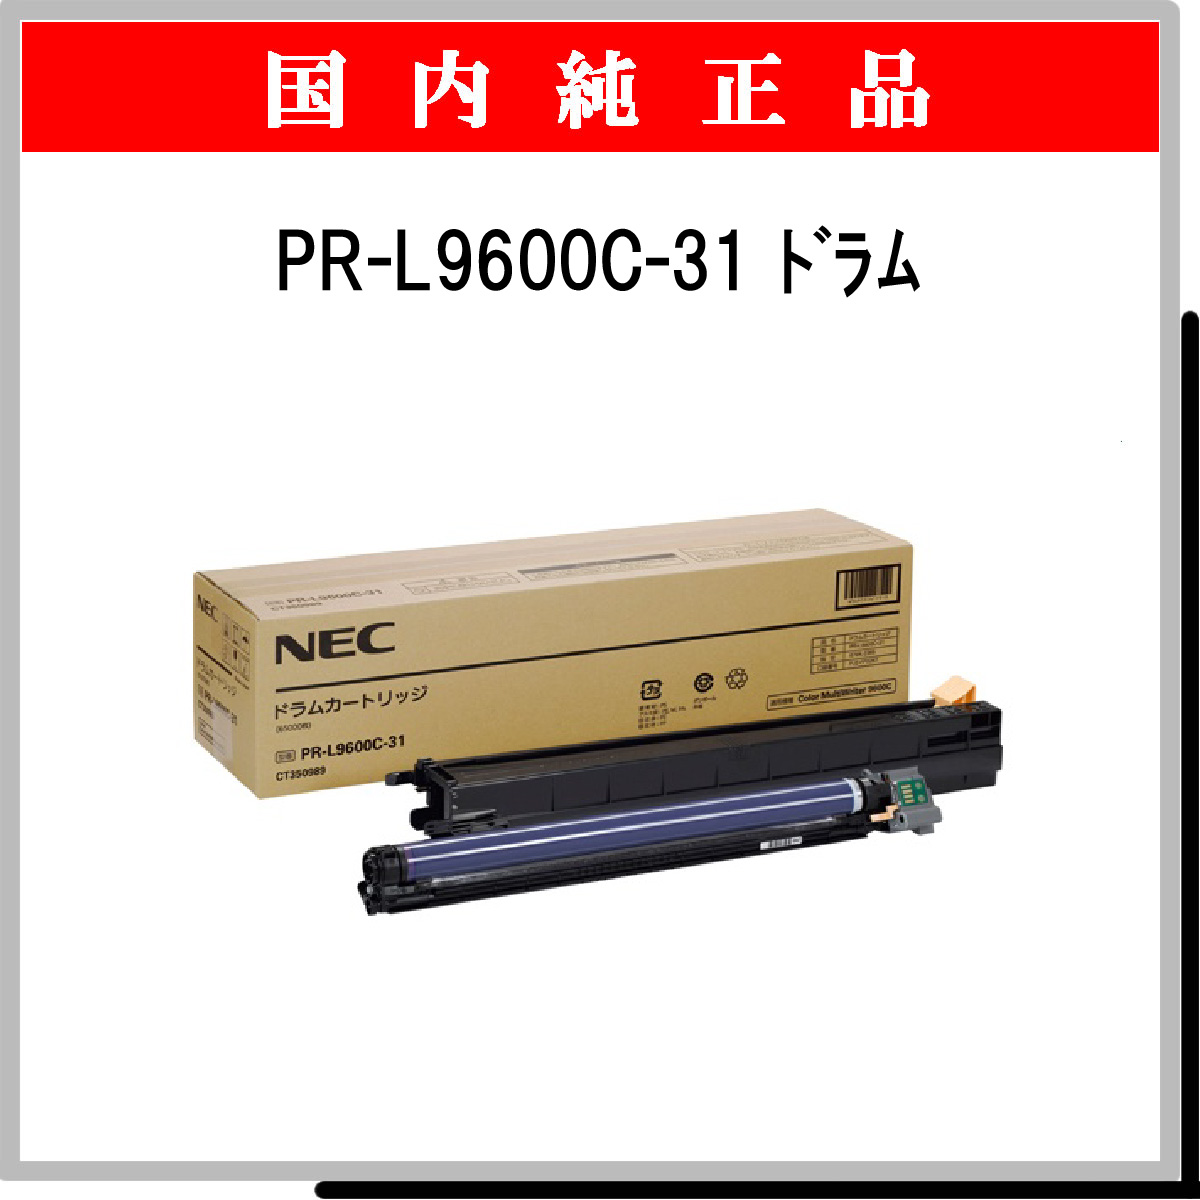 大決算セール NEC ドラムカートリッジ PR-L9700C-31